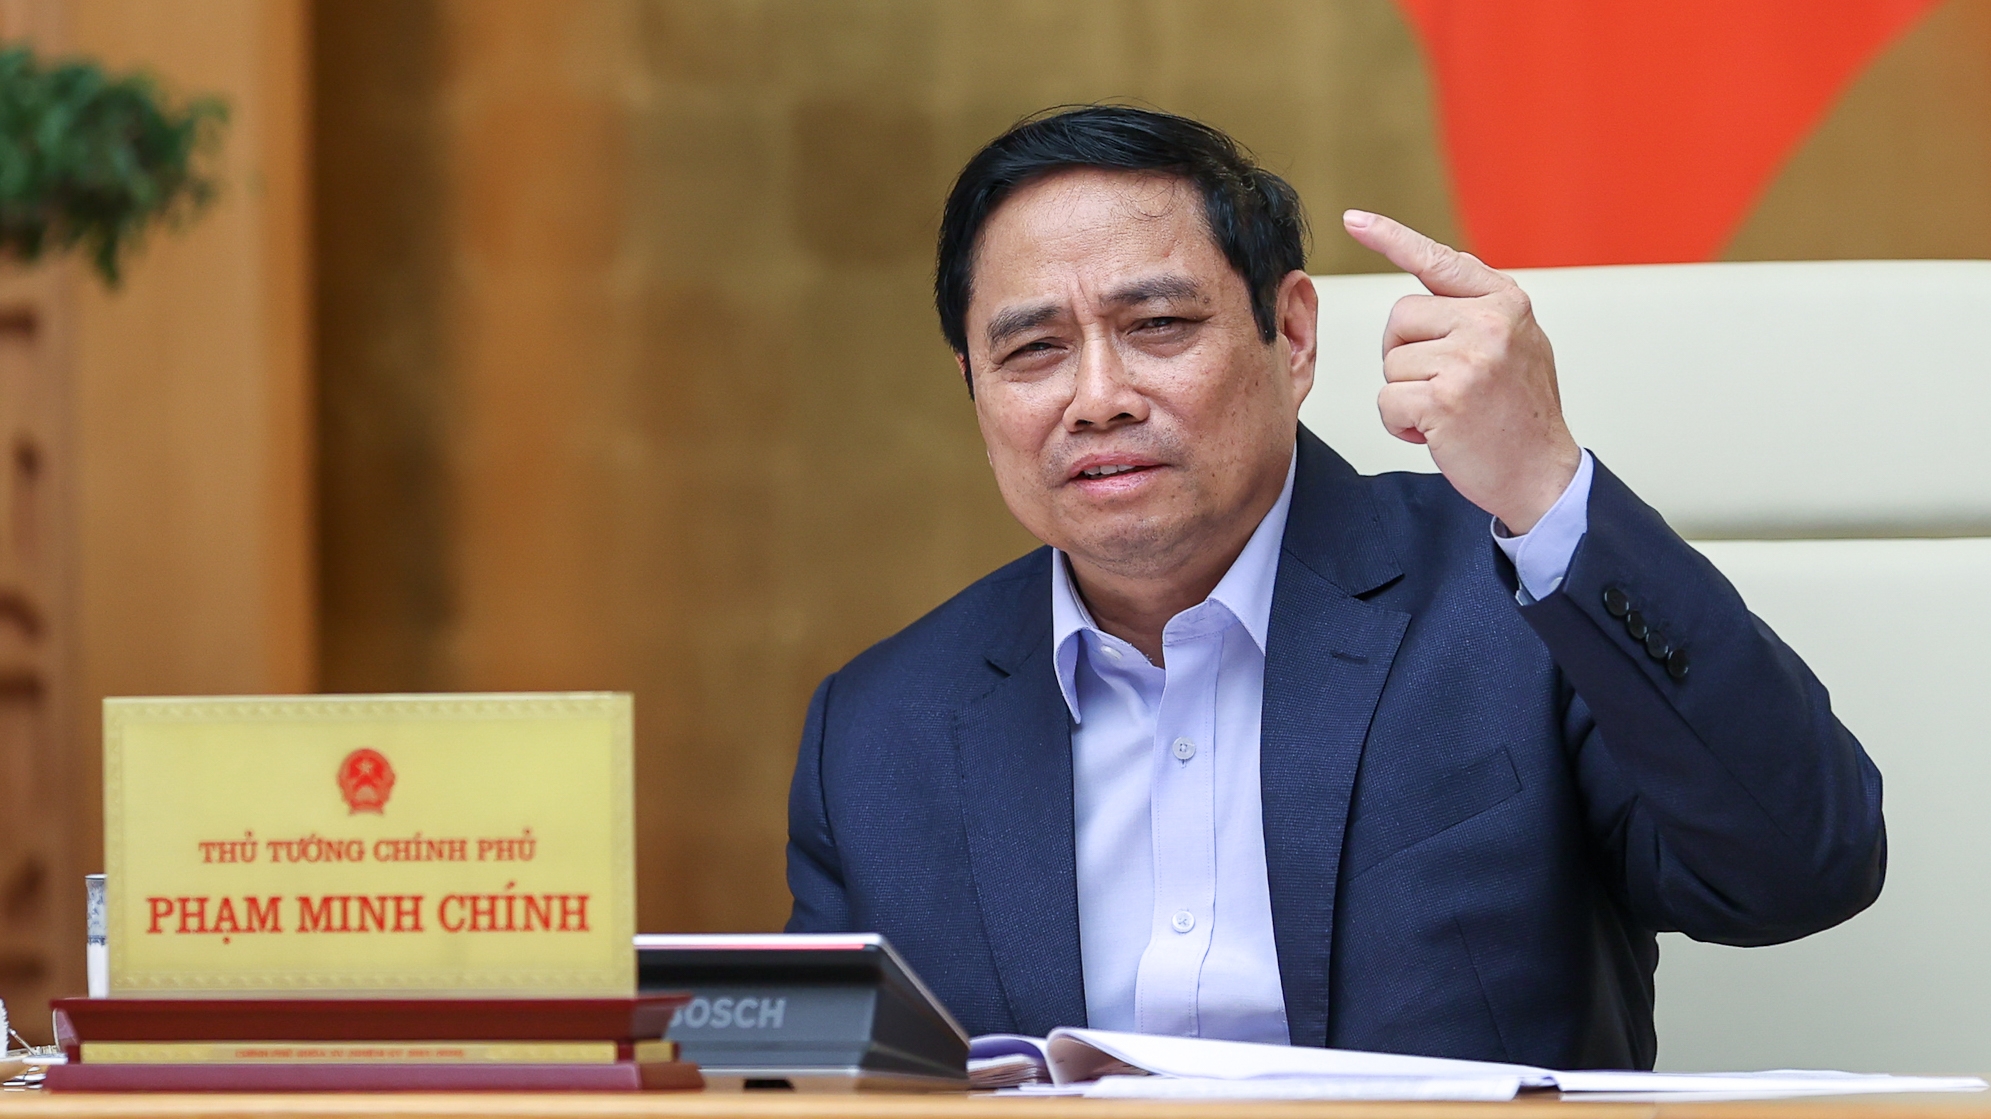 Thủ tướng Phạm Minh Chính: Khẩn trương, quyết liệt triển khai các chính sách để người dân, doanh nghiệp được hưởng thụ